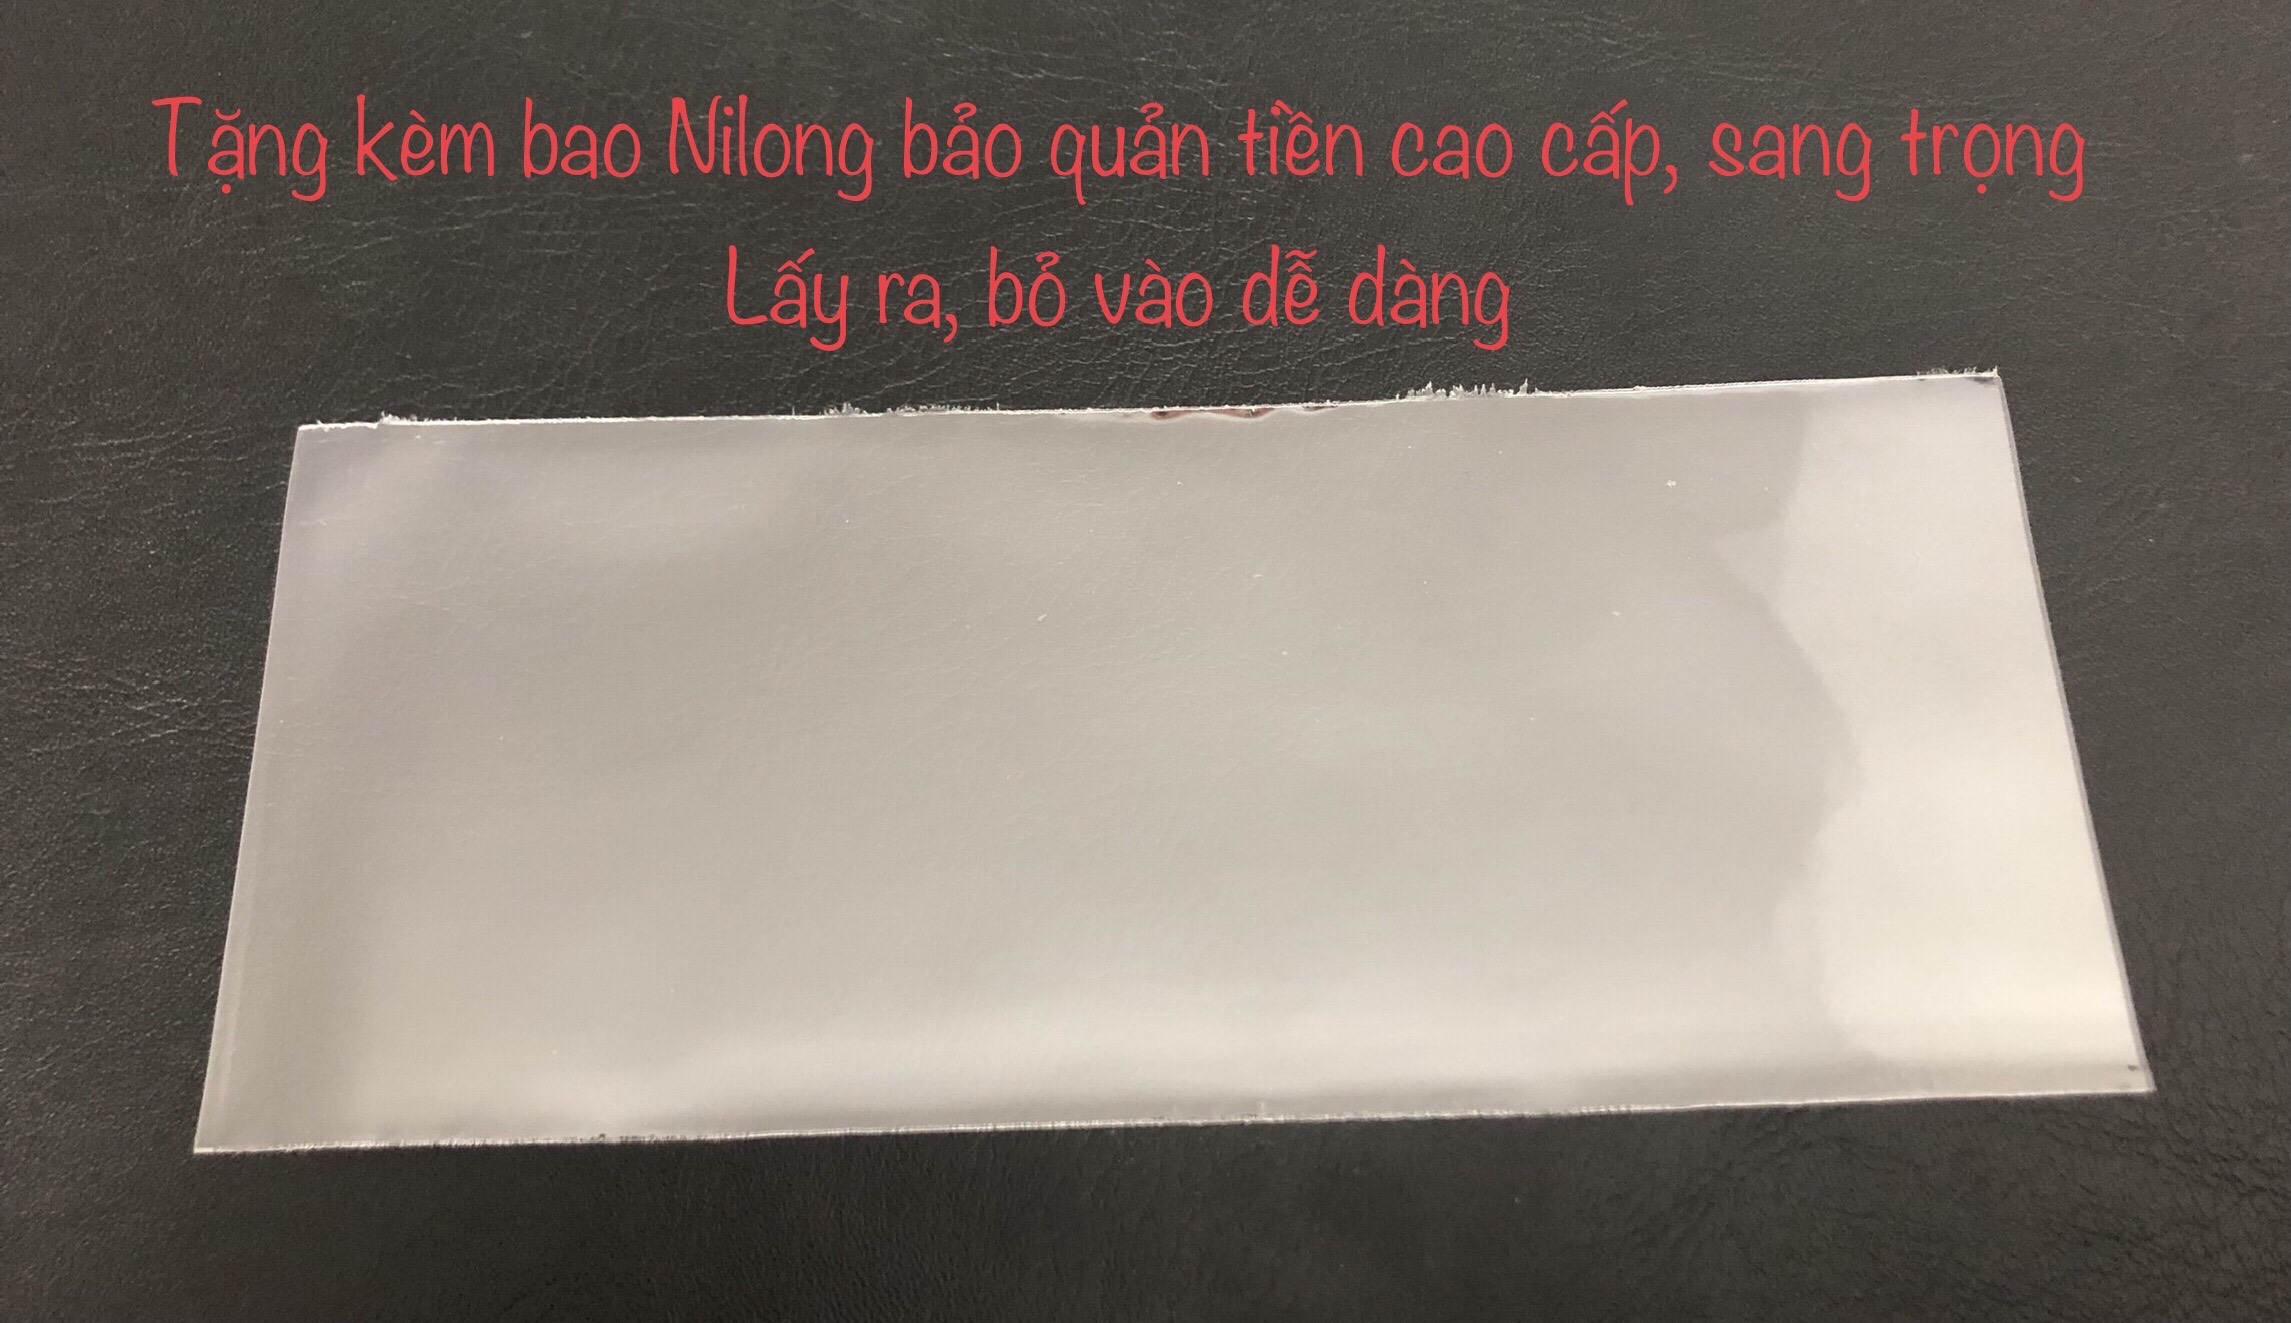 Tiền xưa Việt Nam, tờ 2 đồng Cầu Móng Cái ở Sài Gòn - Nhân dân đón tiếp bộ đội